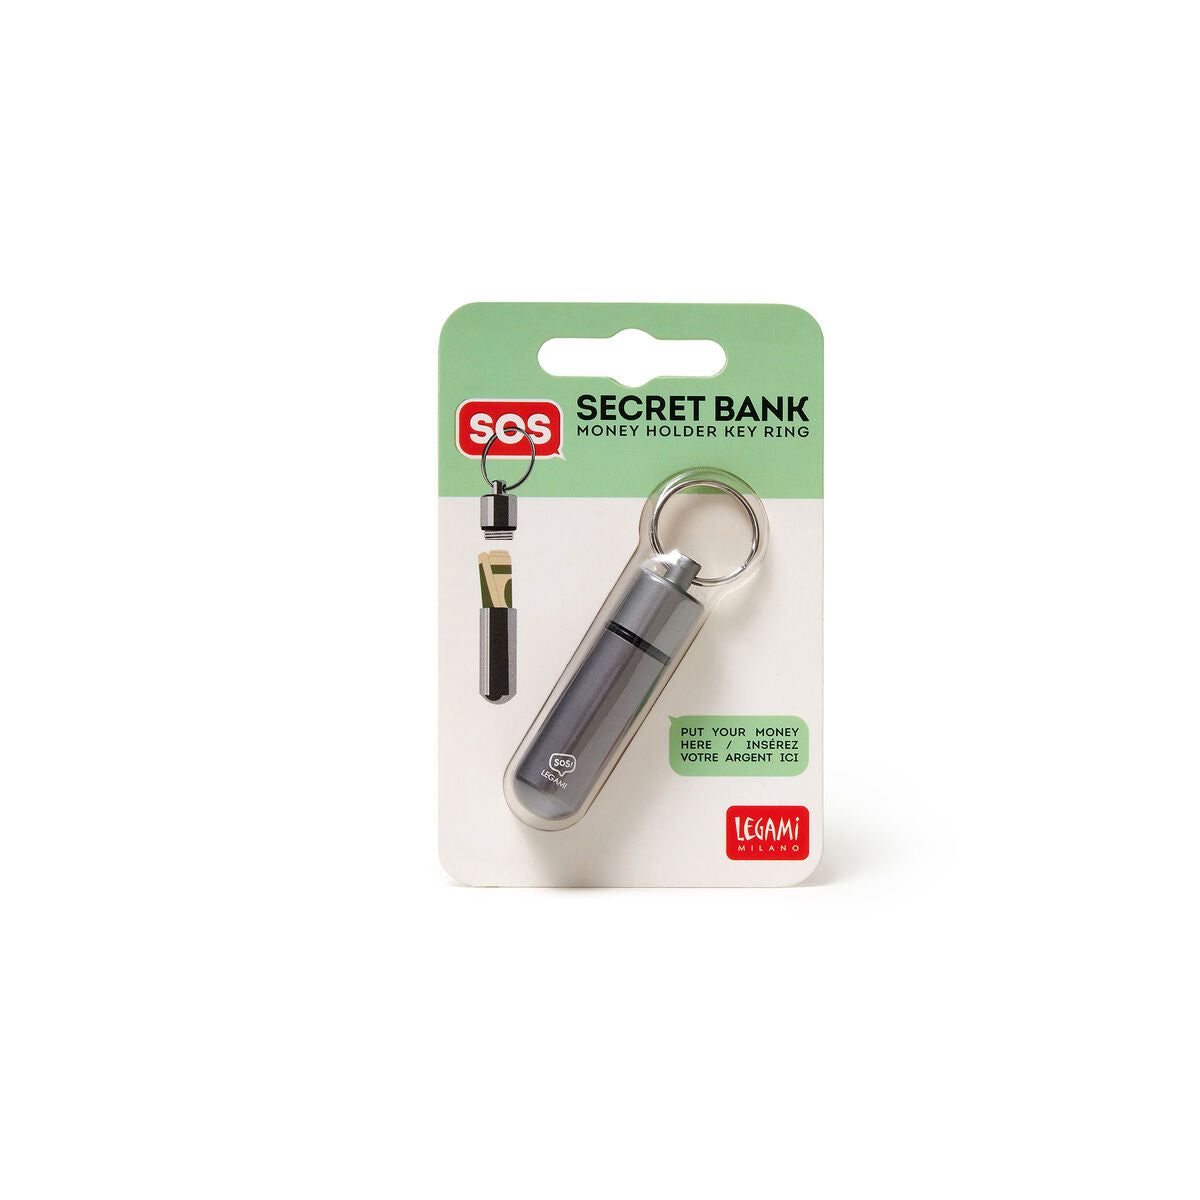 Secret Bank Money Holder Key Ring